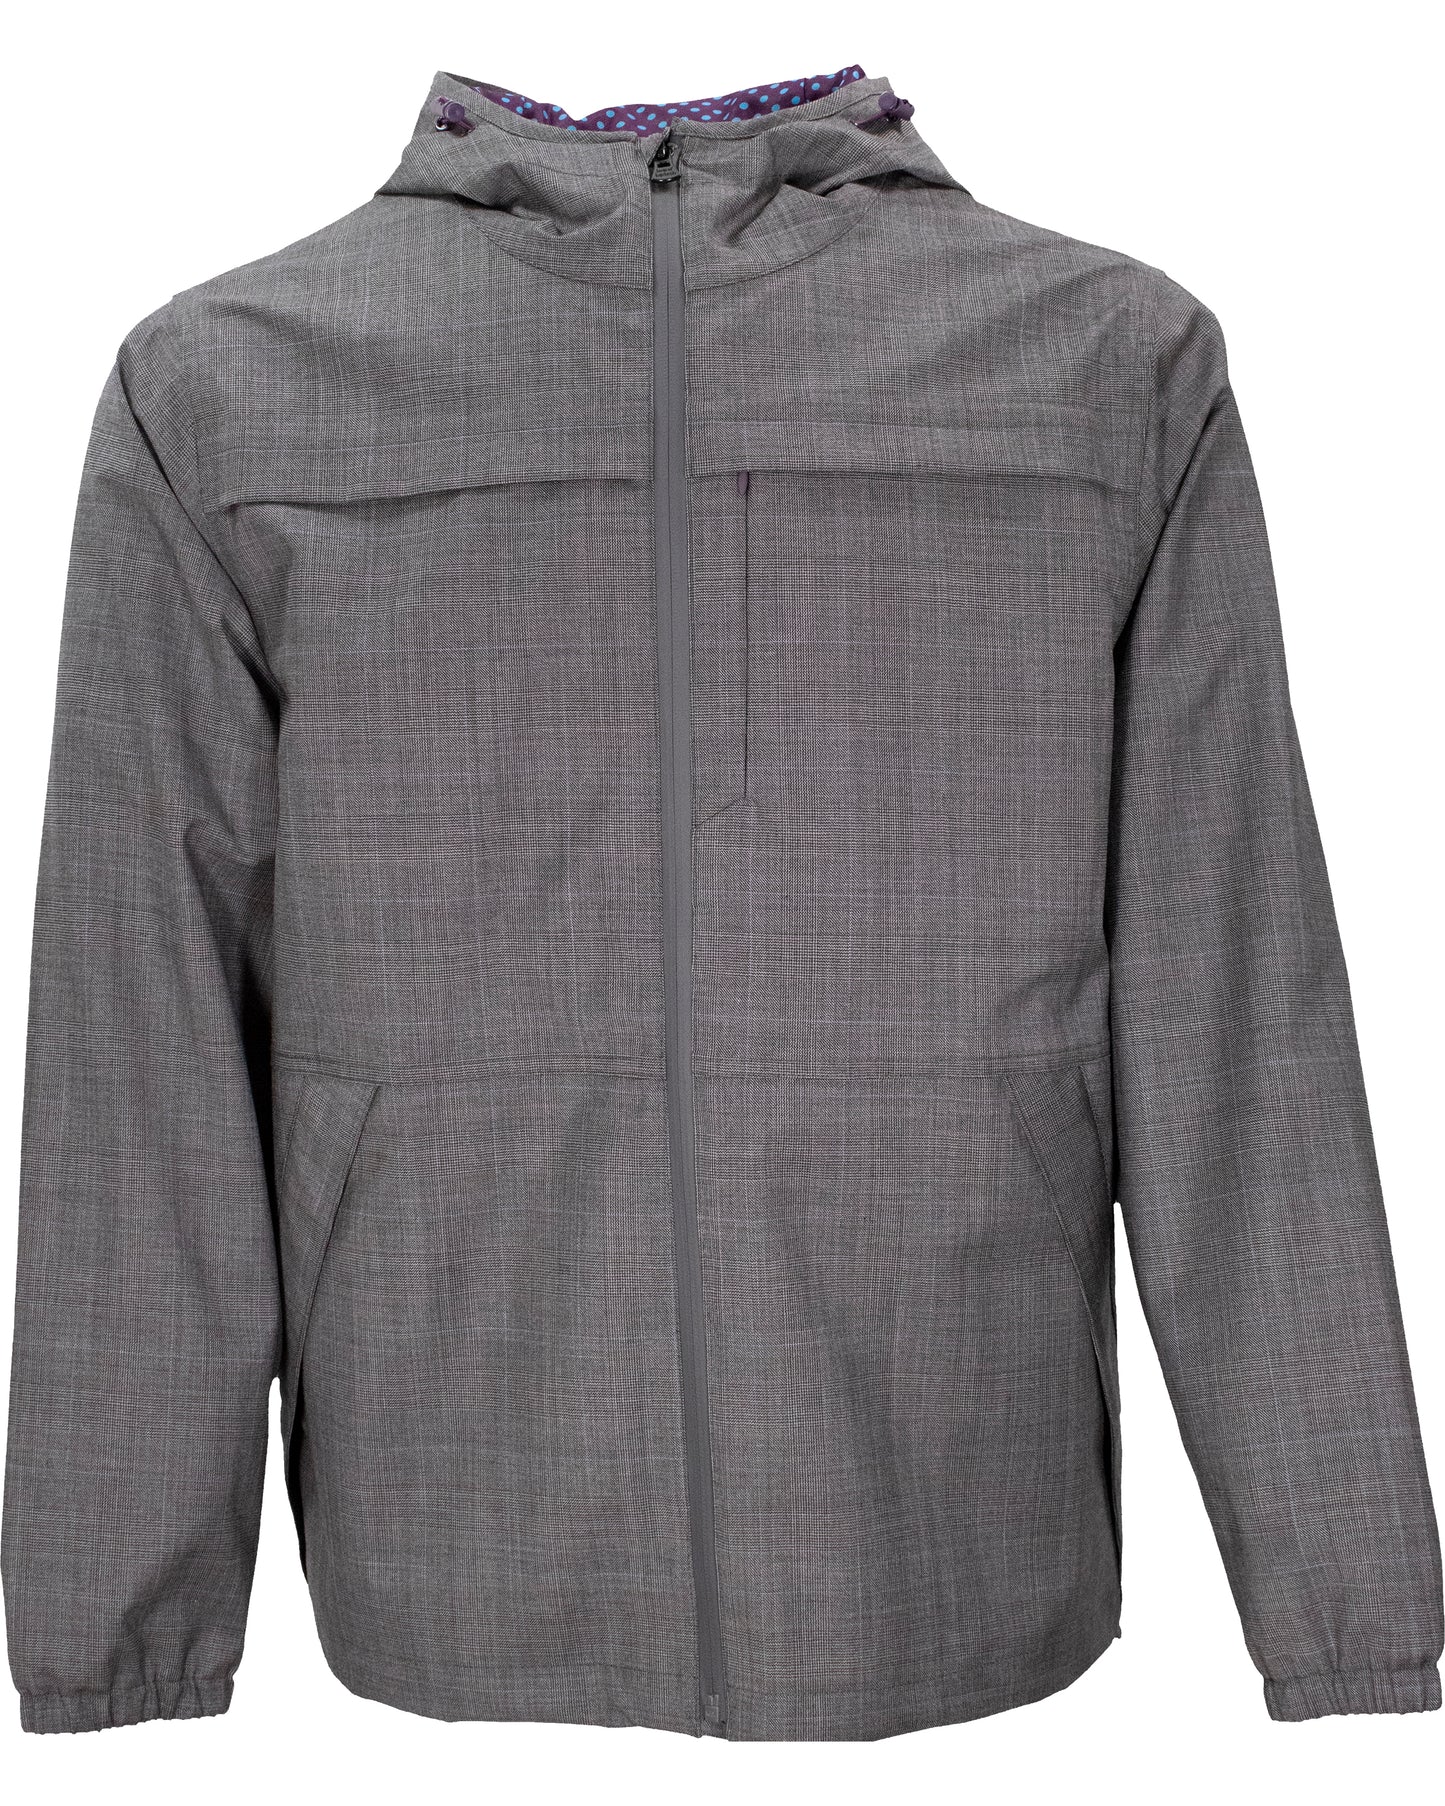 Luca Grey Wool Waterproof Jacket